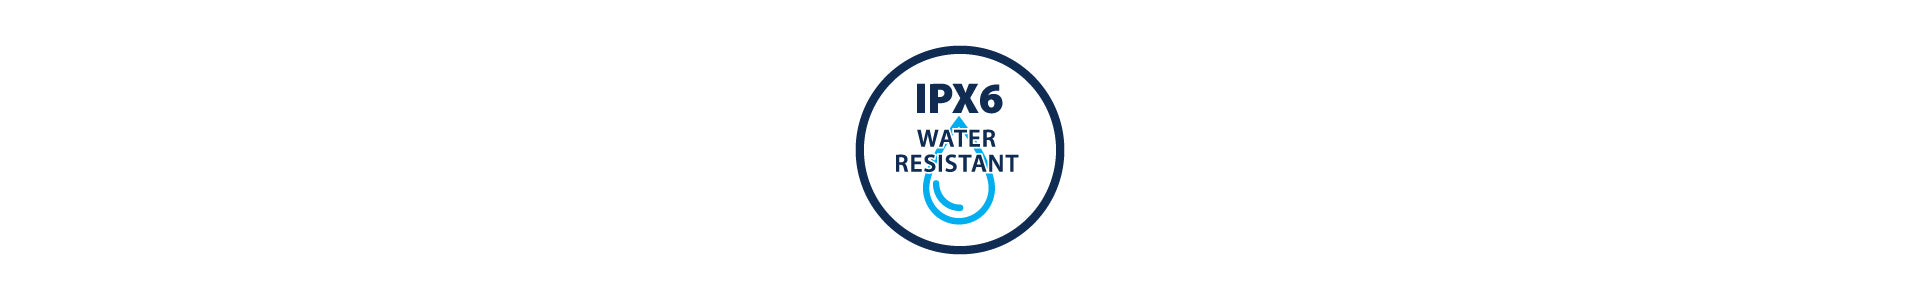 IPX6 rating technology logo.